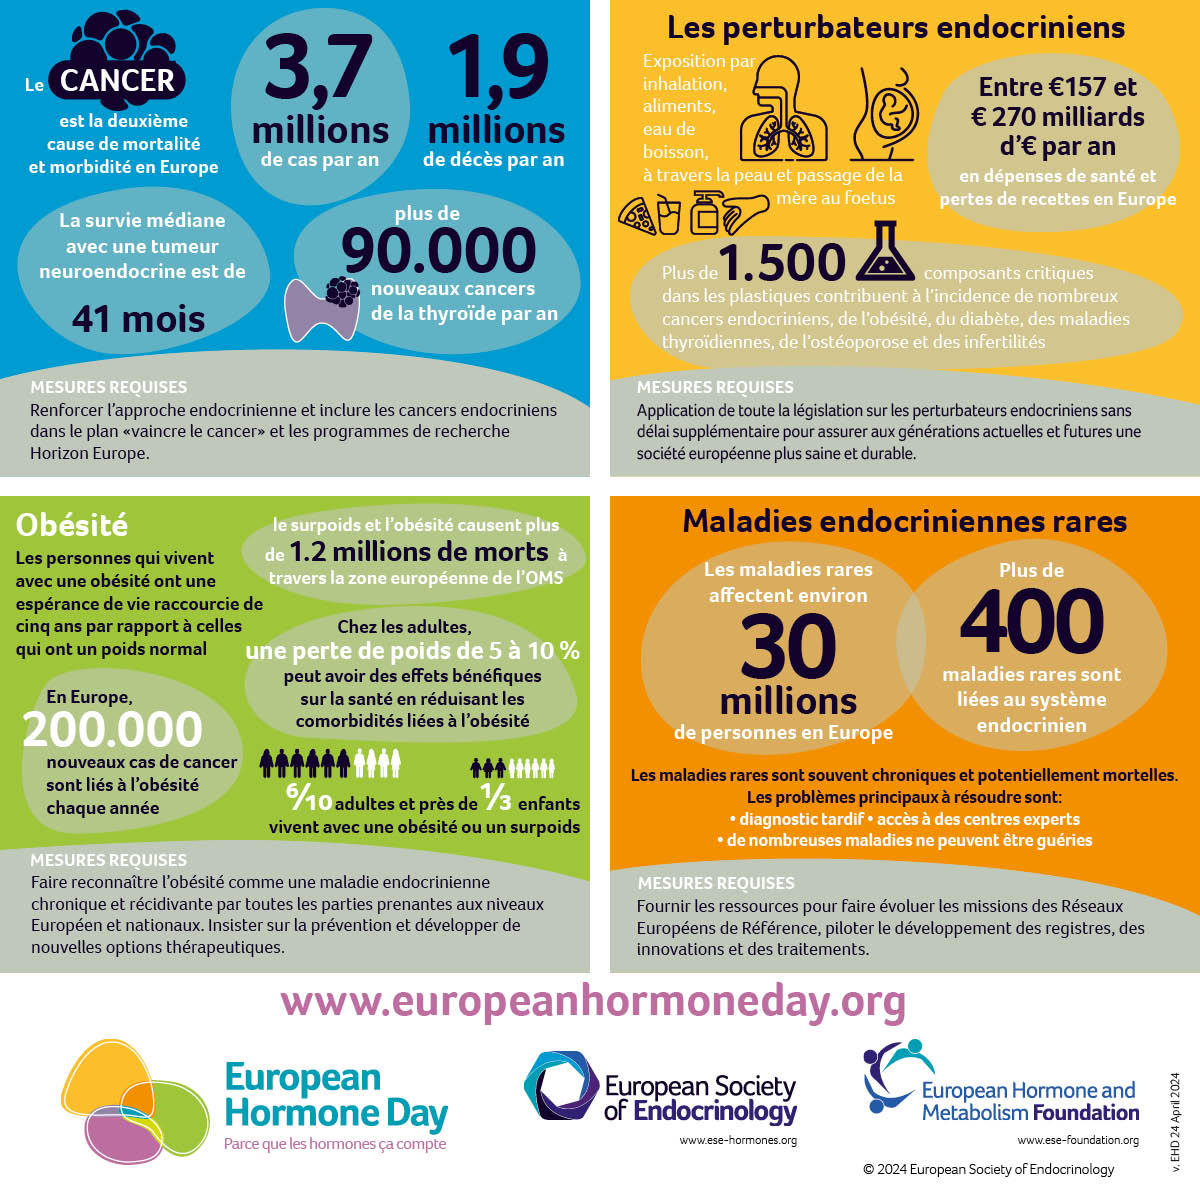 ⏳ J - 7 avant la Journée Européenne des Hormones : et vous, où en êtes-vous avec votre santé hormonale ? #Sante #Endocrinologie #BecauseHormonesMatter #EuropeanHomoneDay